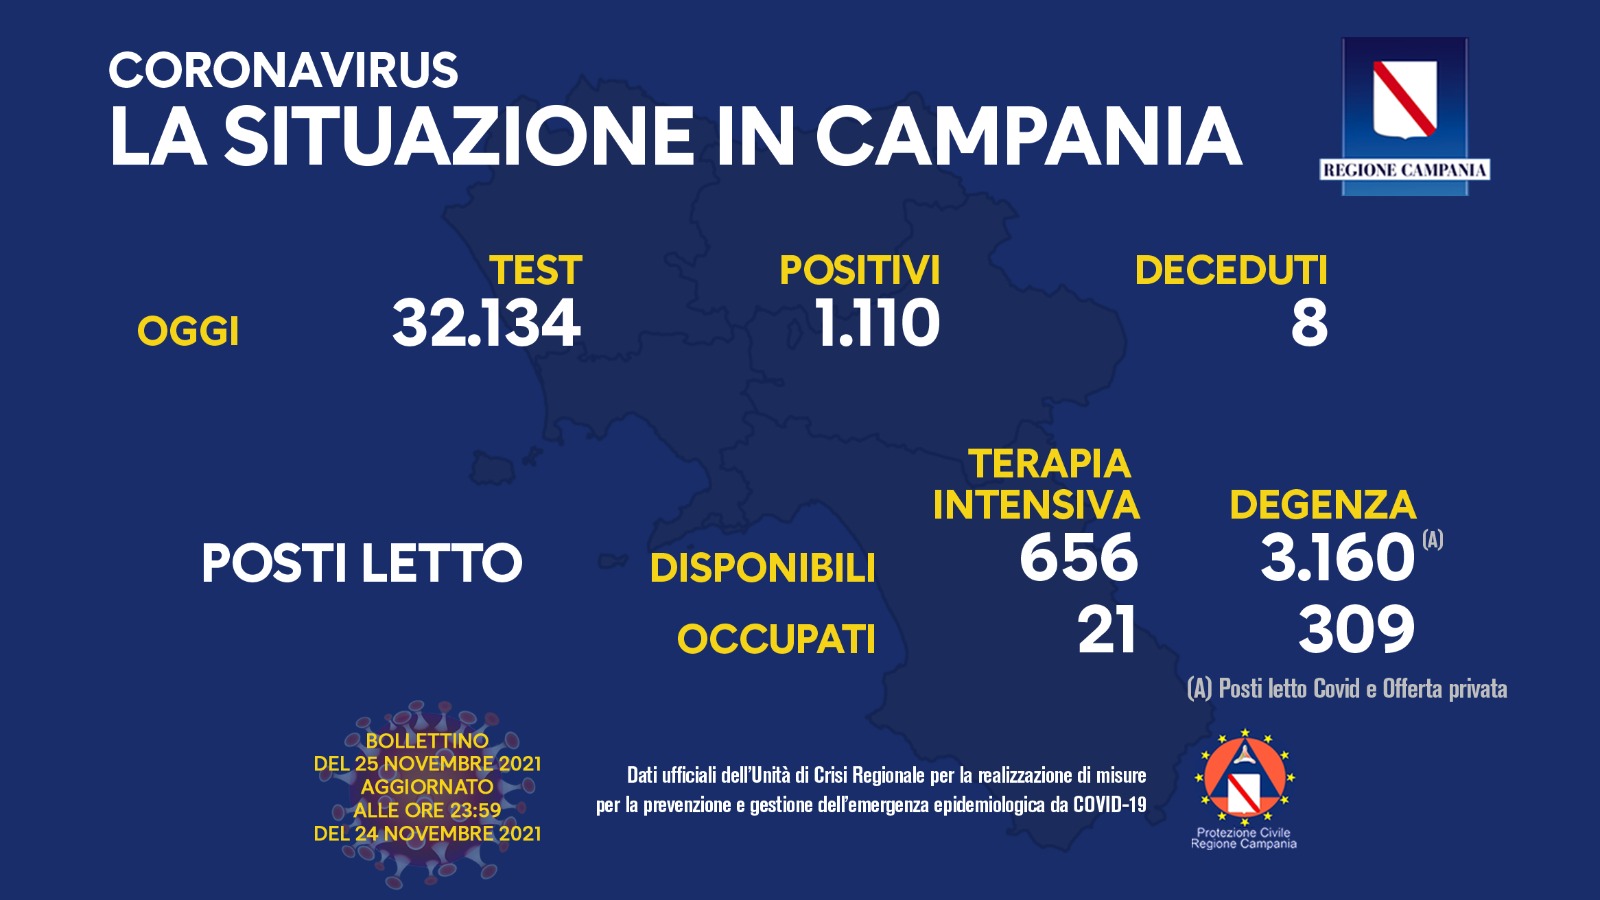 Regione Campania: Coronavirus, Unità di Crisi, Bollettino, 1110 casi positivi, 8 decessi